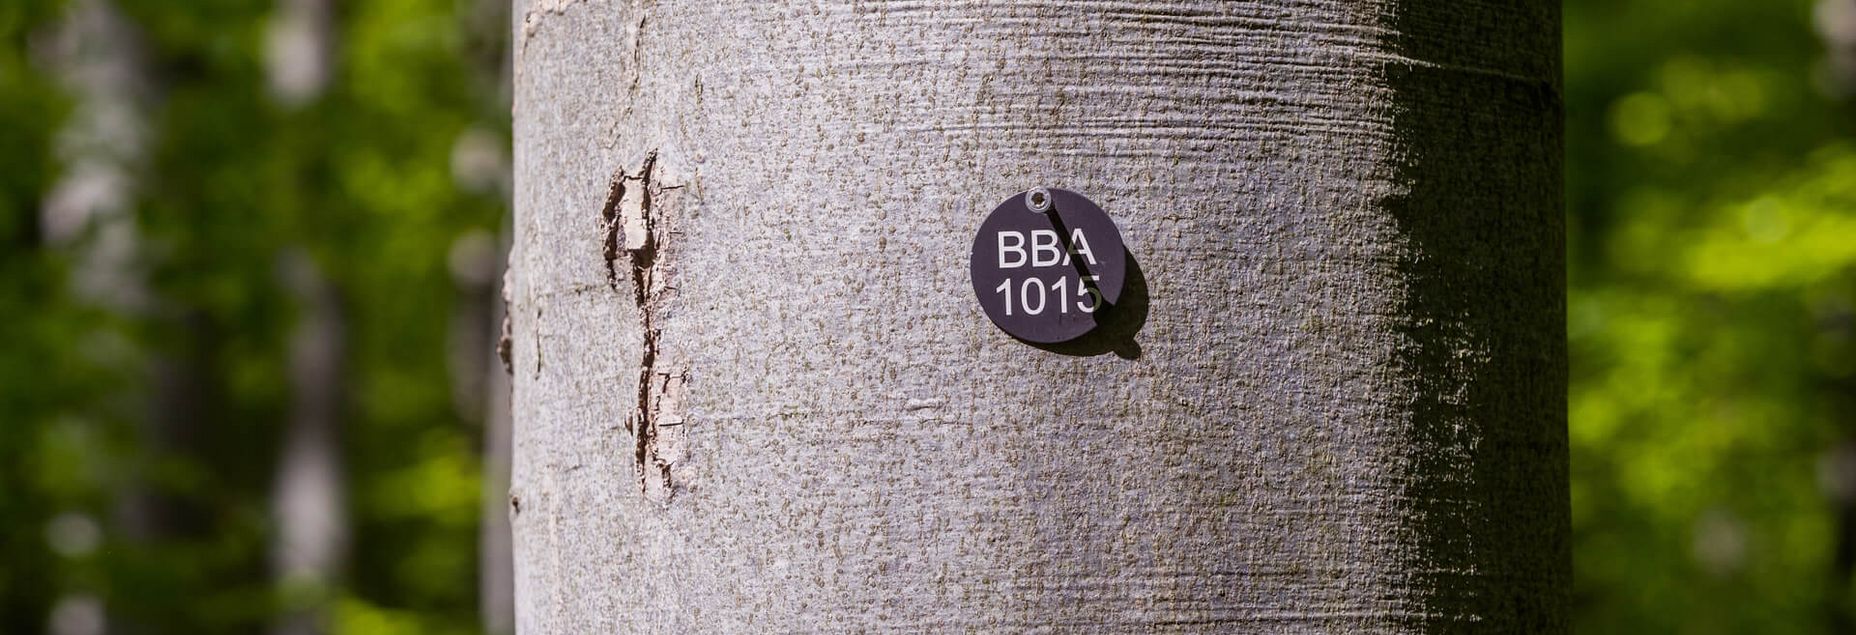 Baum BBA 1015 - Plakette